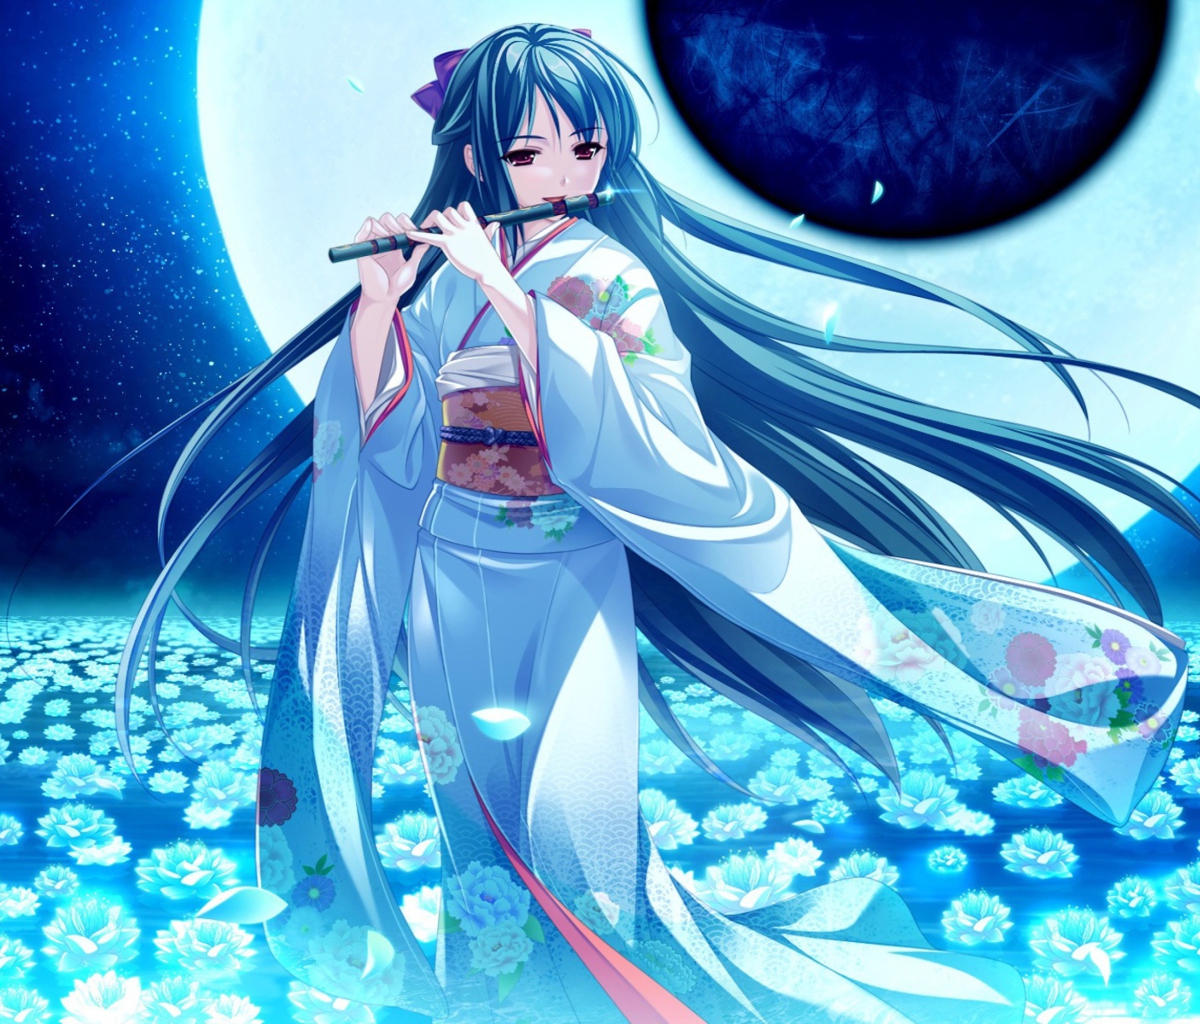 Tsukumo No Kanade Anime Girl Blue Kimono wallpaper 1200x1024